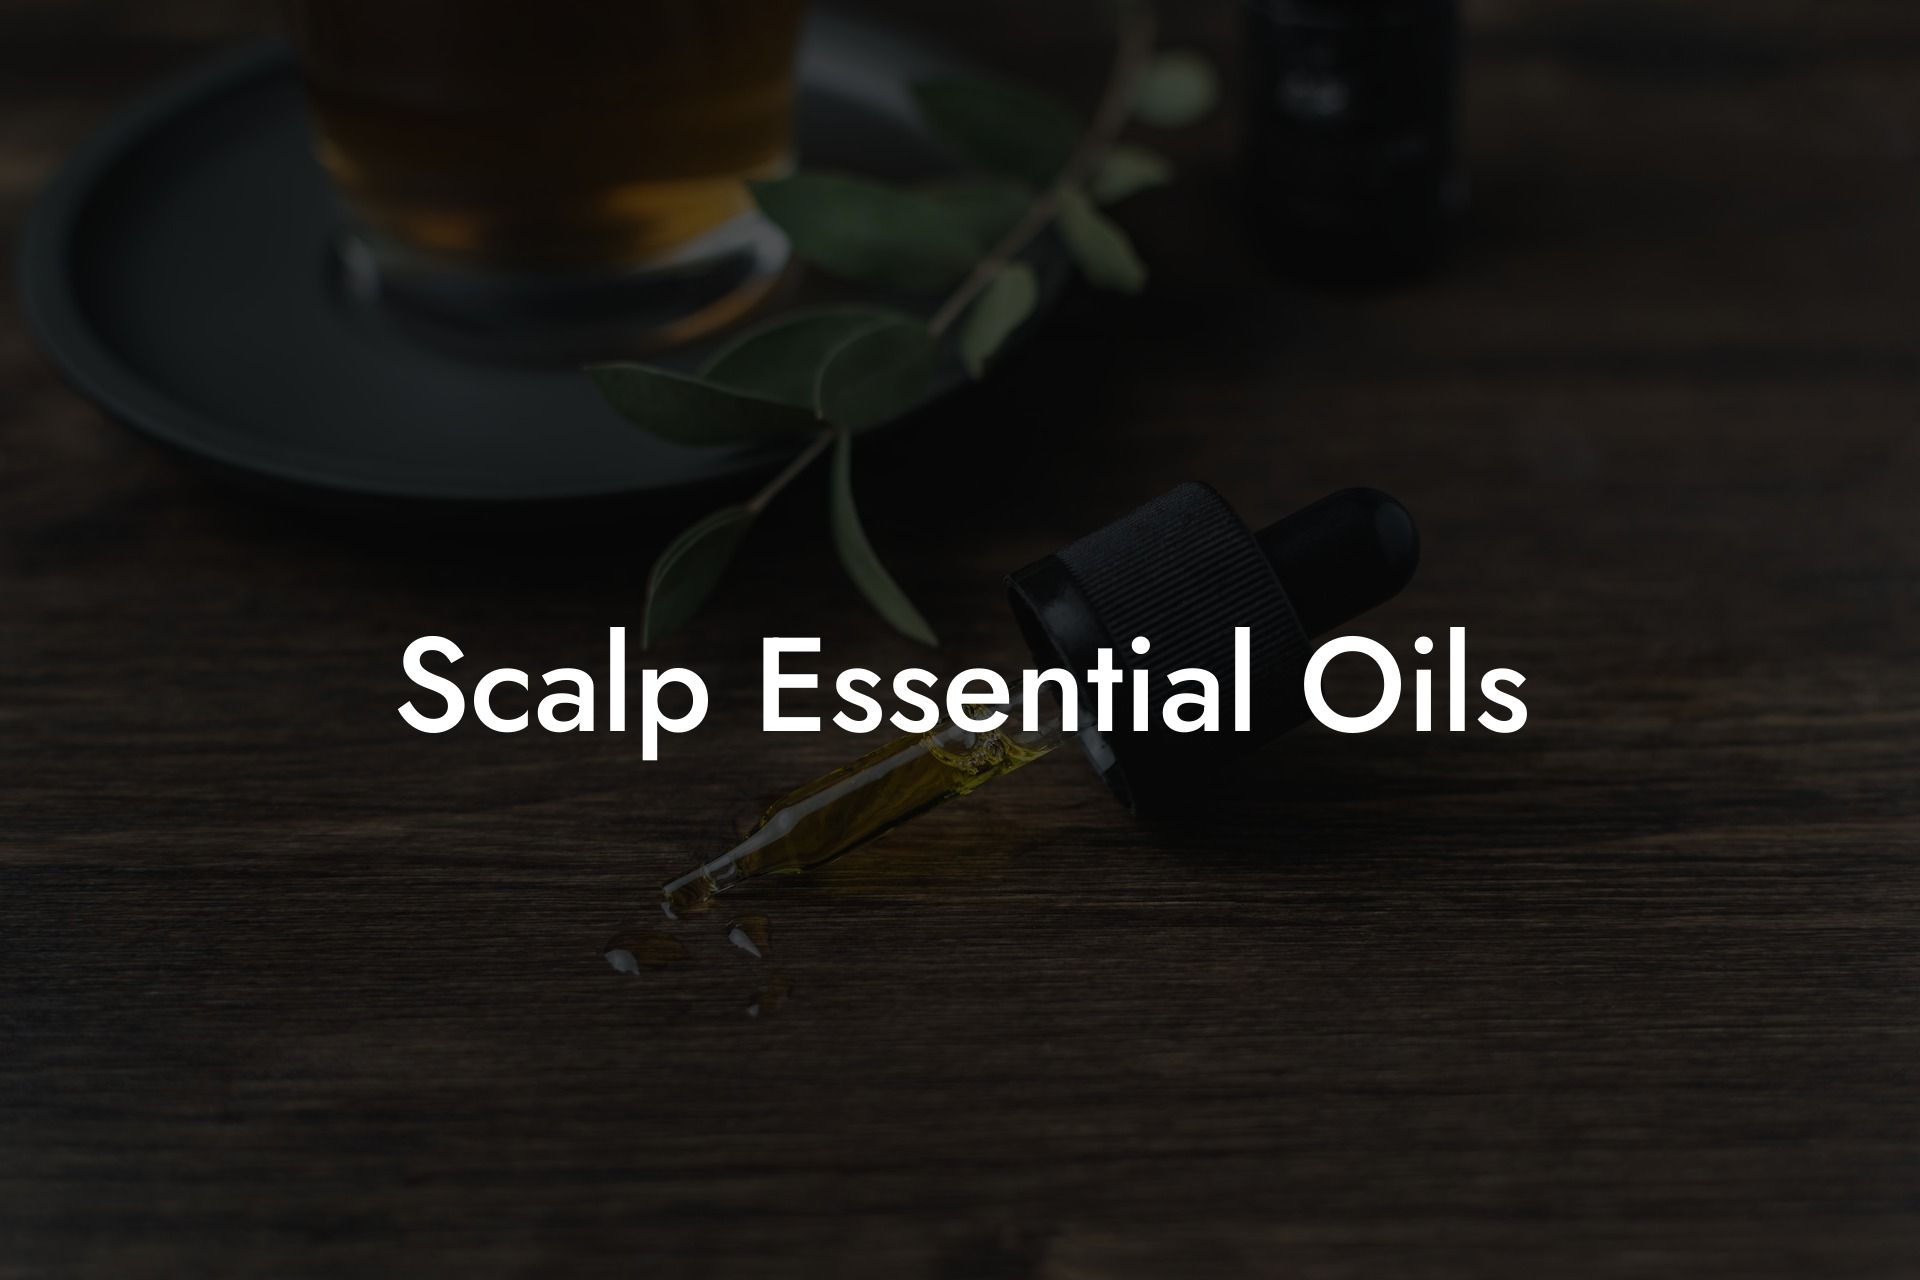 Scalp Essential Oils